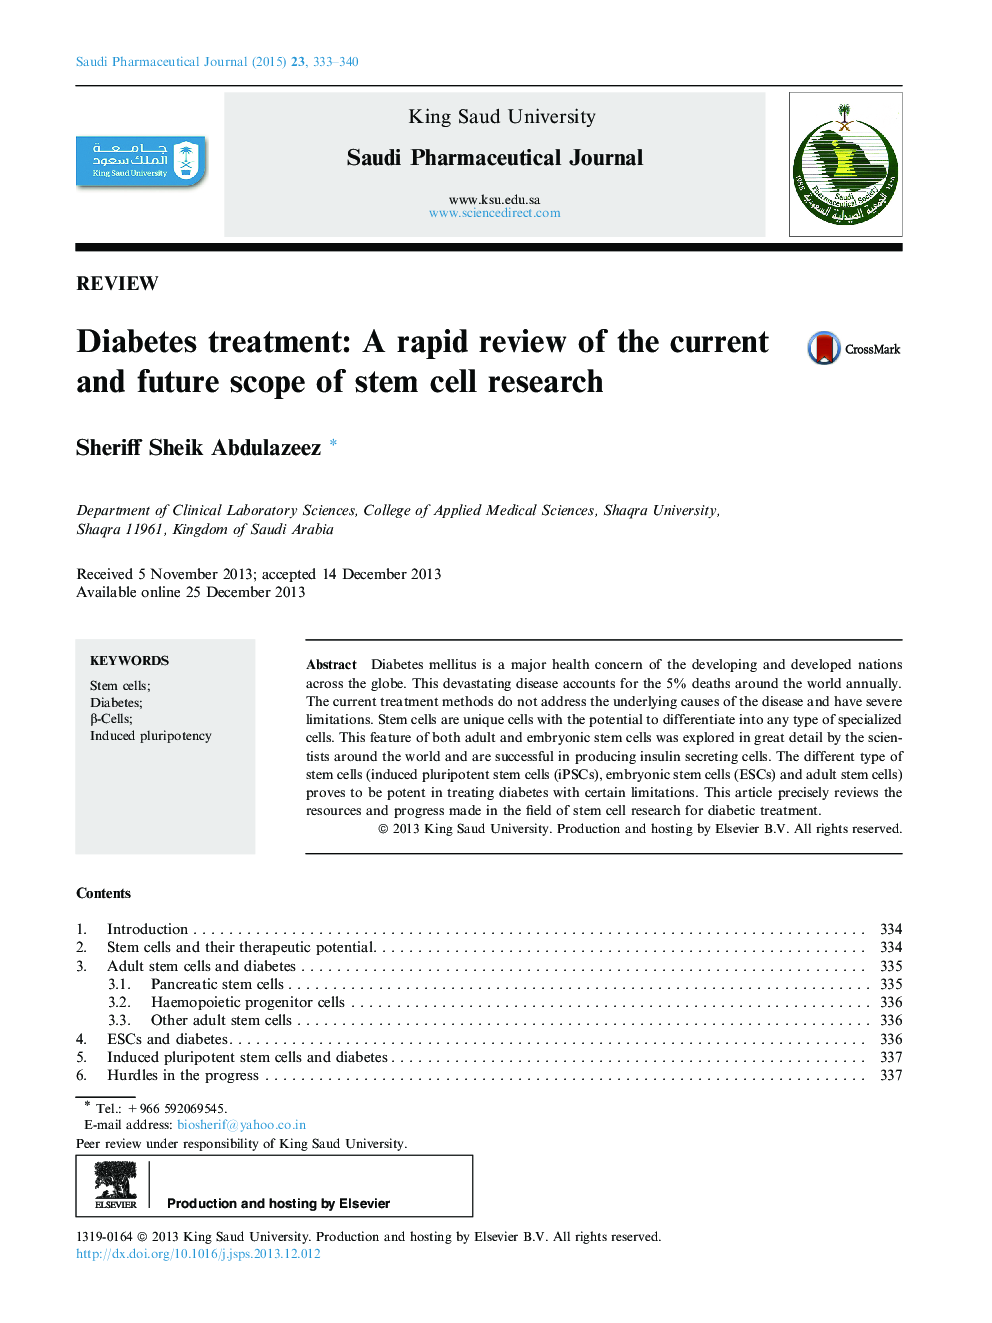 درمان دیابت: بررسی سریع در مورد محدوده فعلی و آینده تحقیقات سلول های بنیادی 